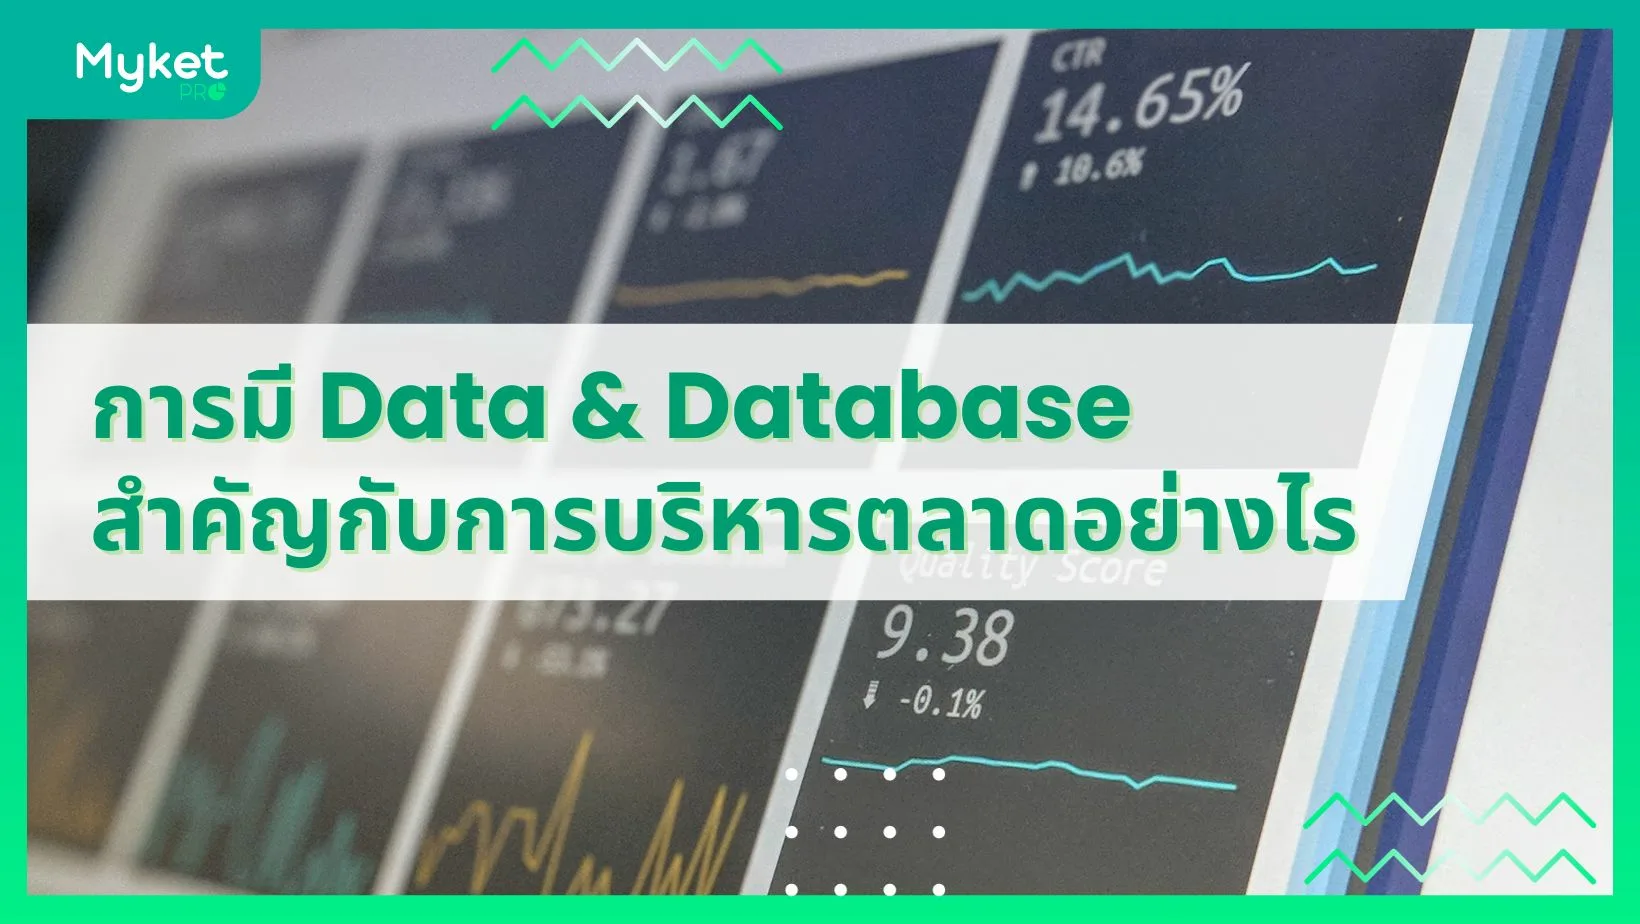 การมี Data & Database สำคัญกับการบริหารตลาดในยุคใหม่อย่างไร